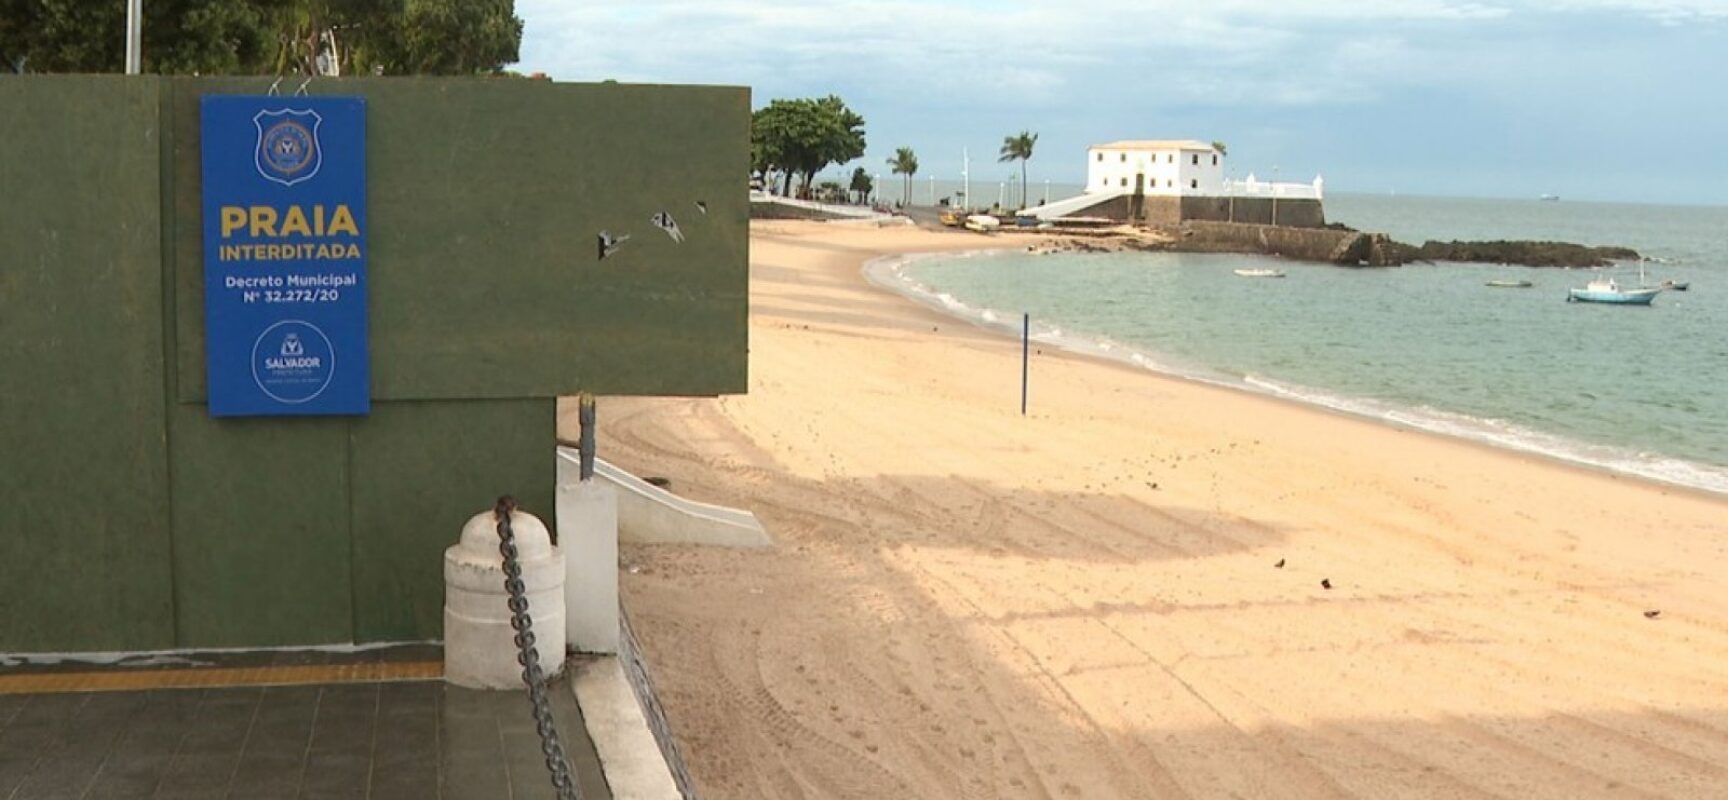 Praias seguem fechadas em Salvador por mais uma semana